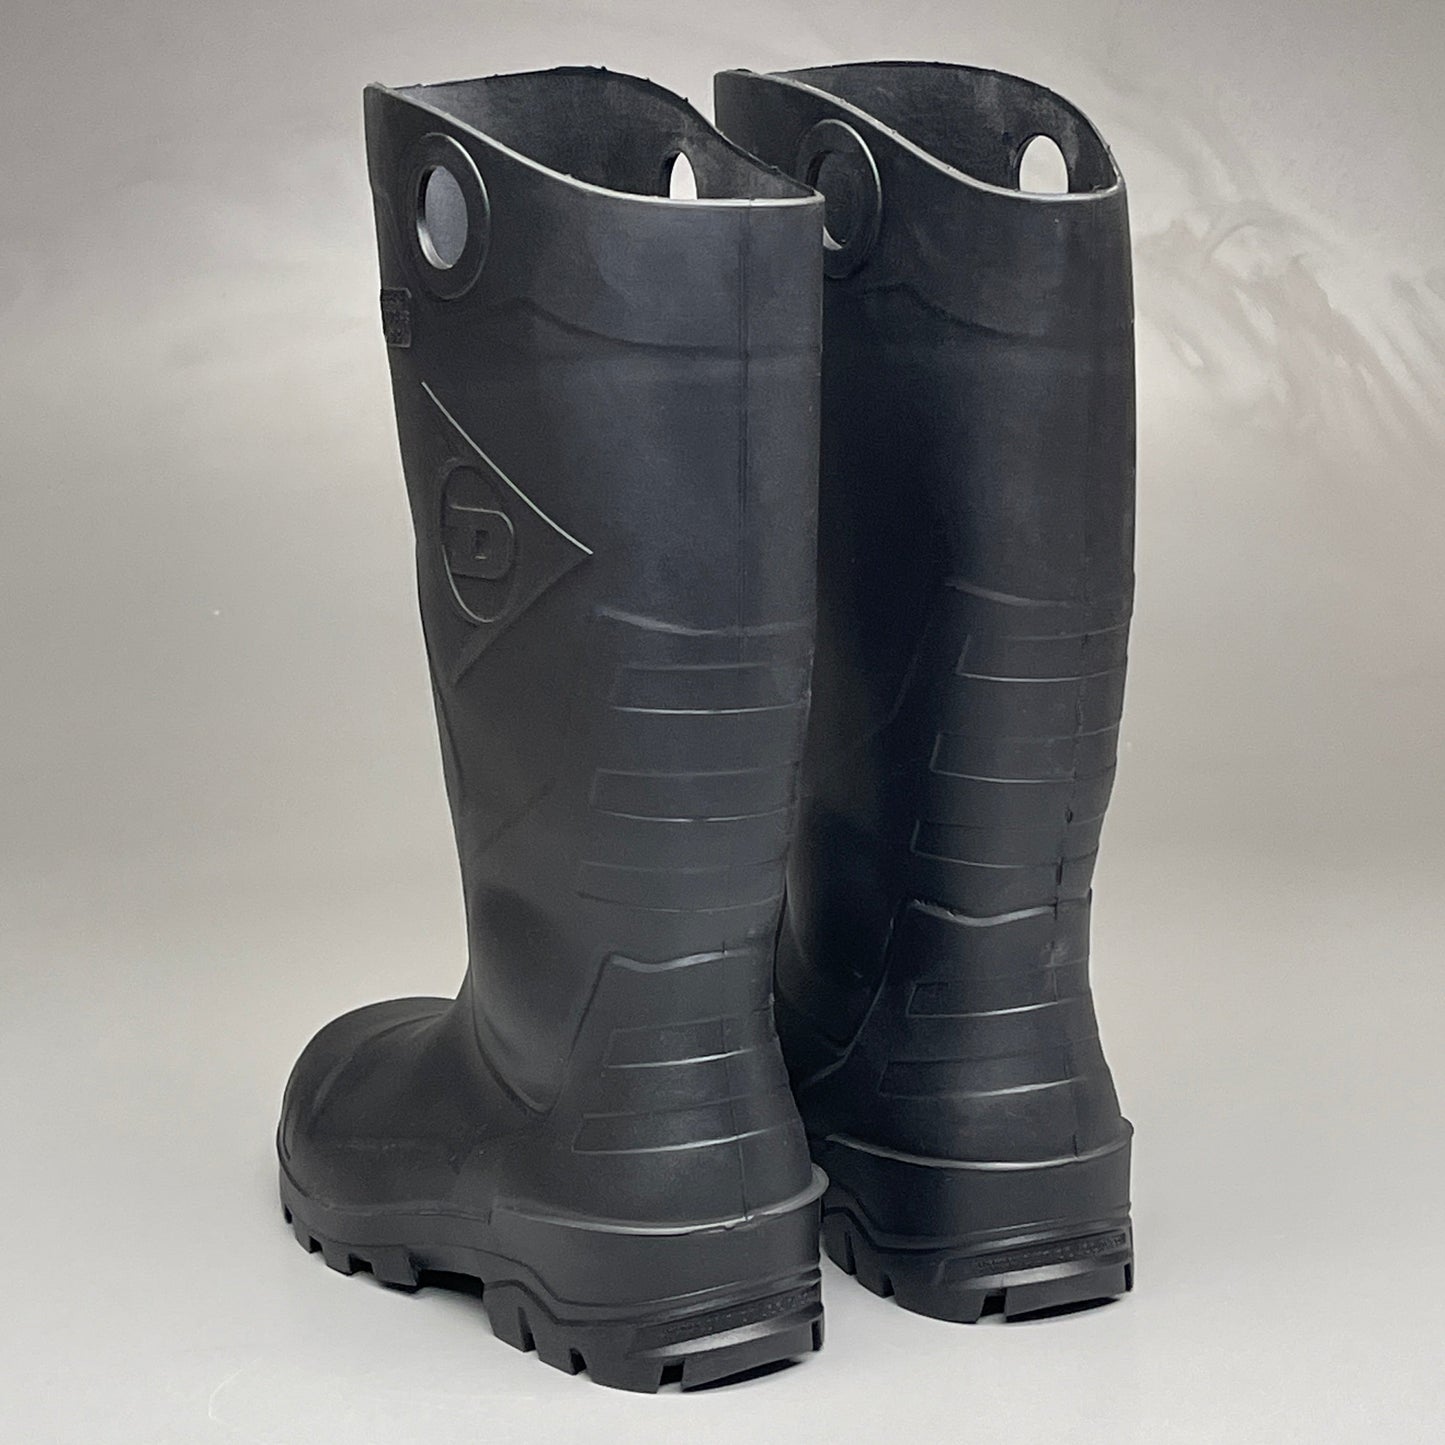 DUNLOP Steel Toe Safety Boots Waterproof Black Sz M 3 W 5 #86776